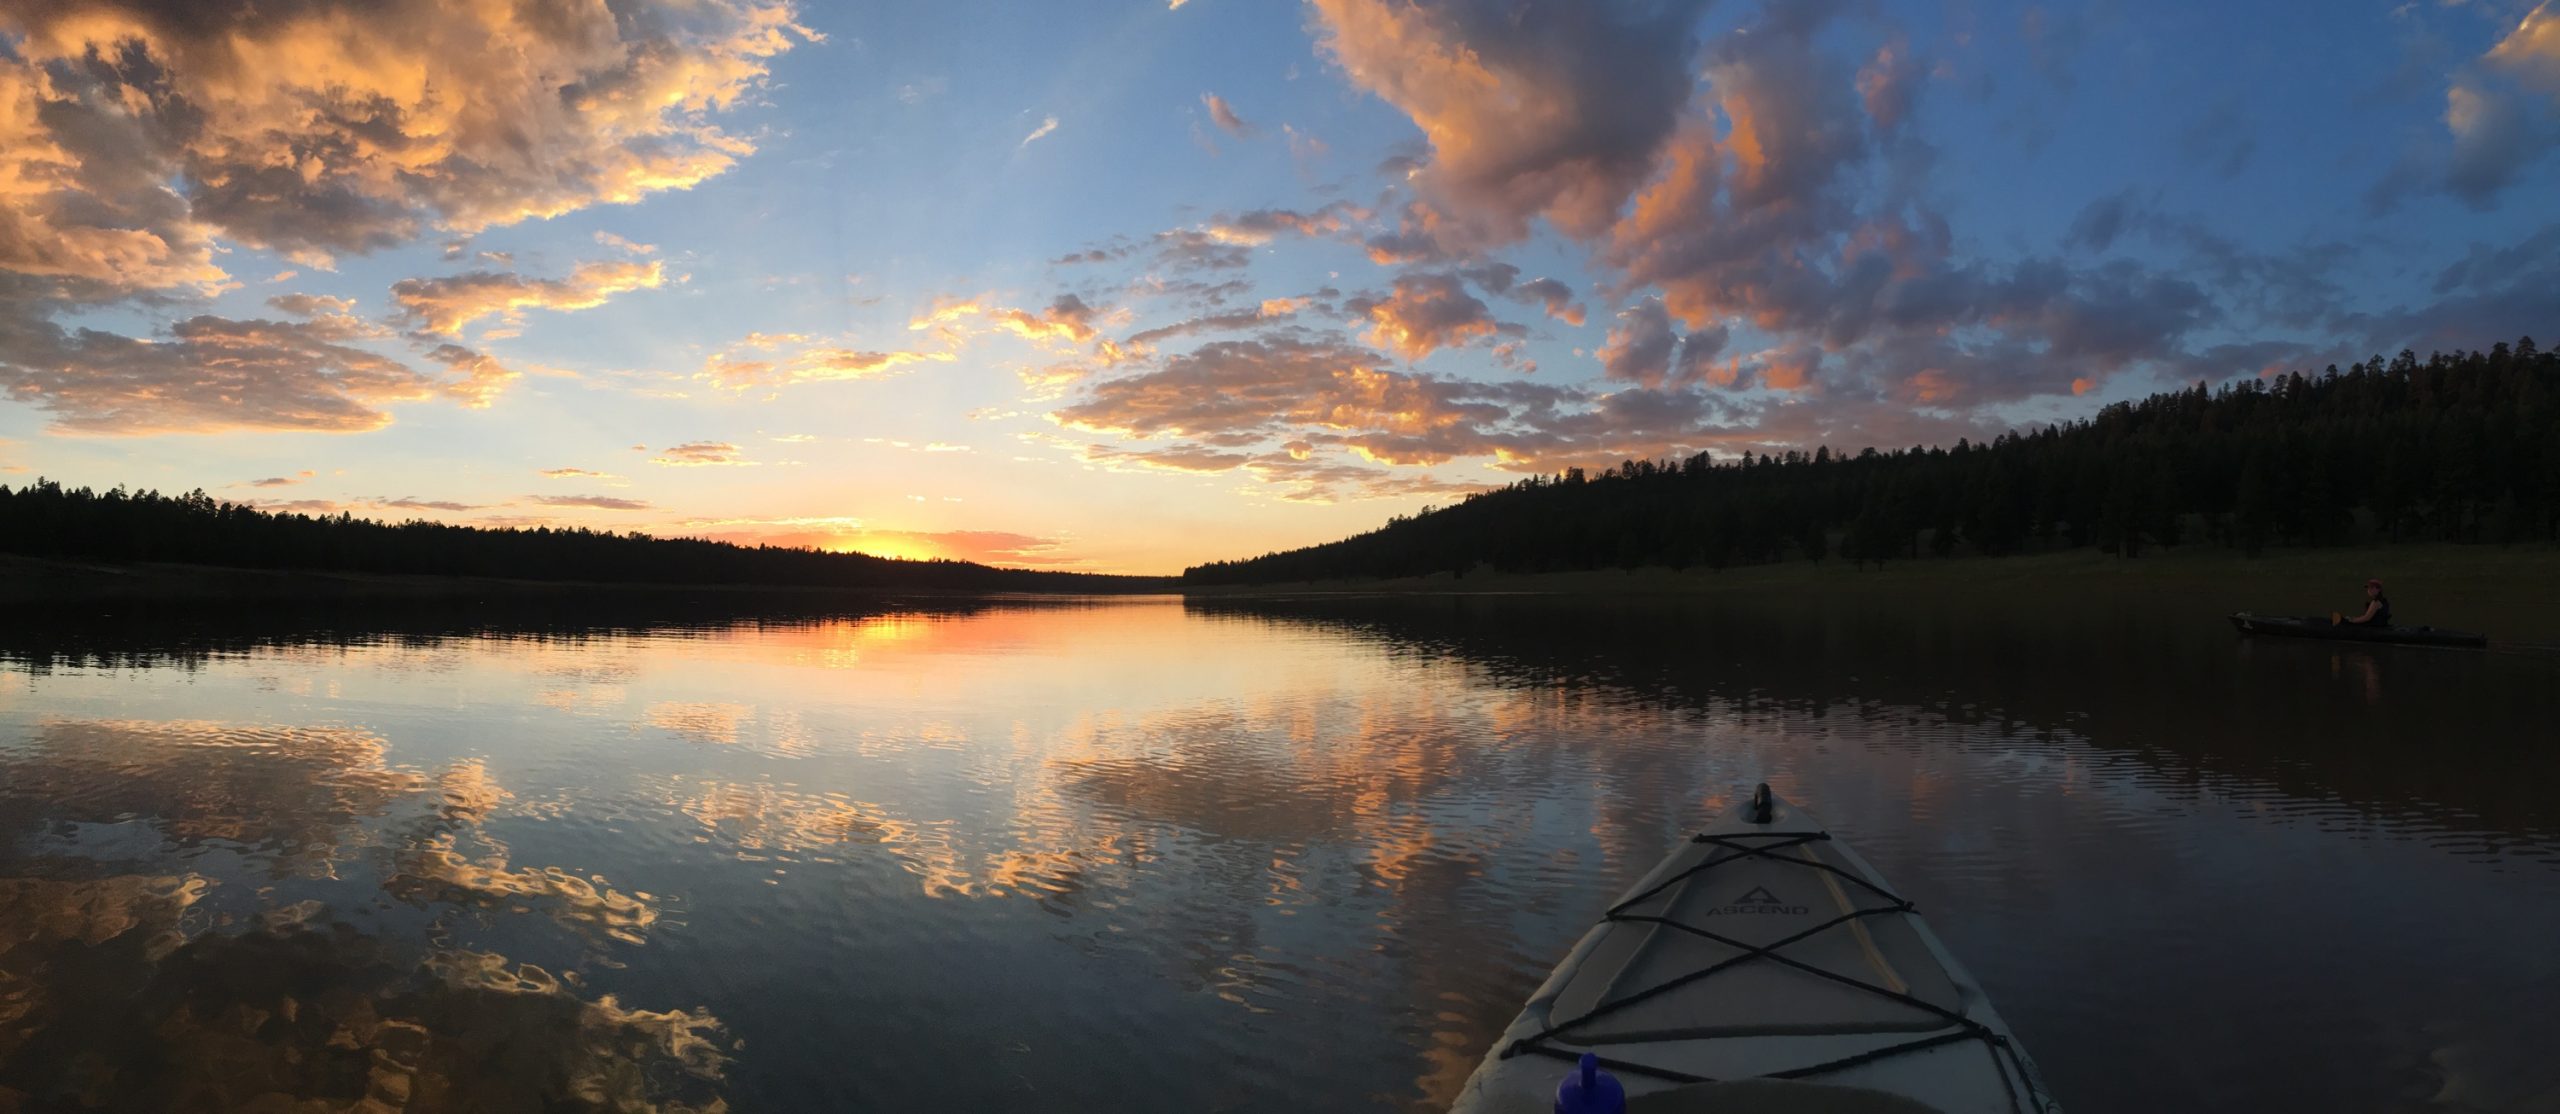 Sunset on Lake Mary